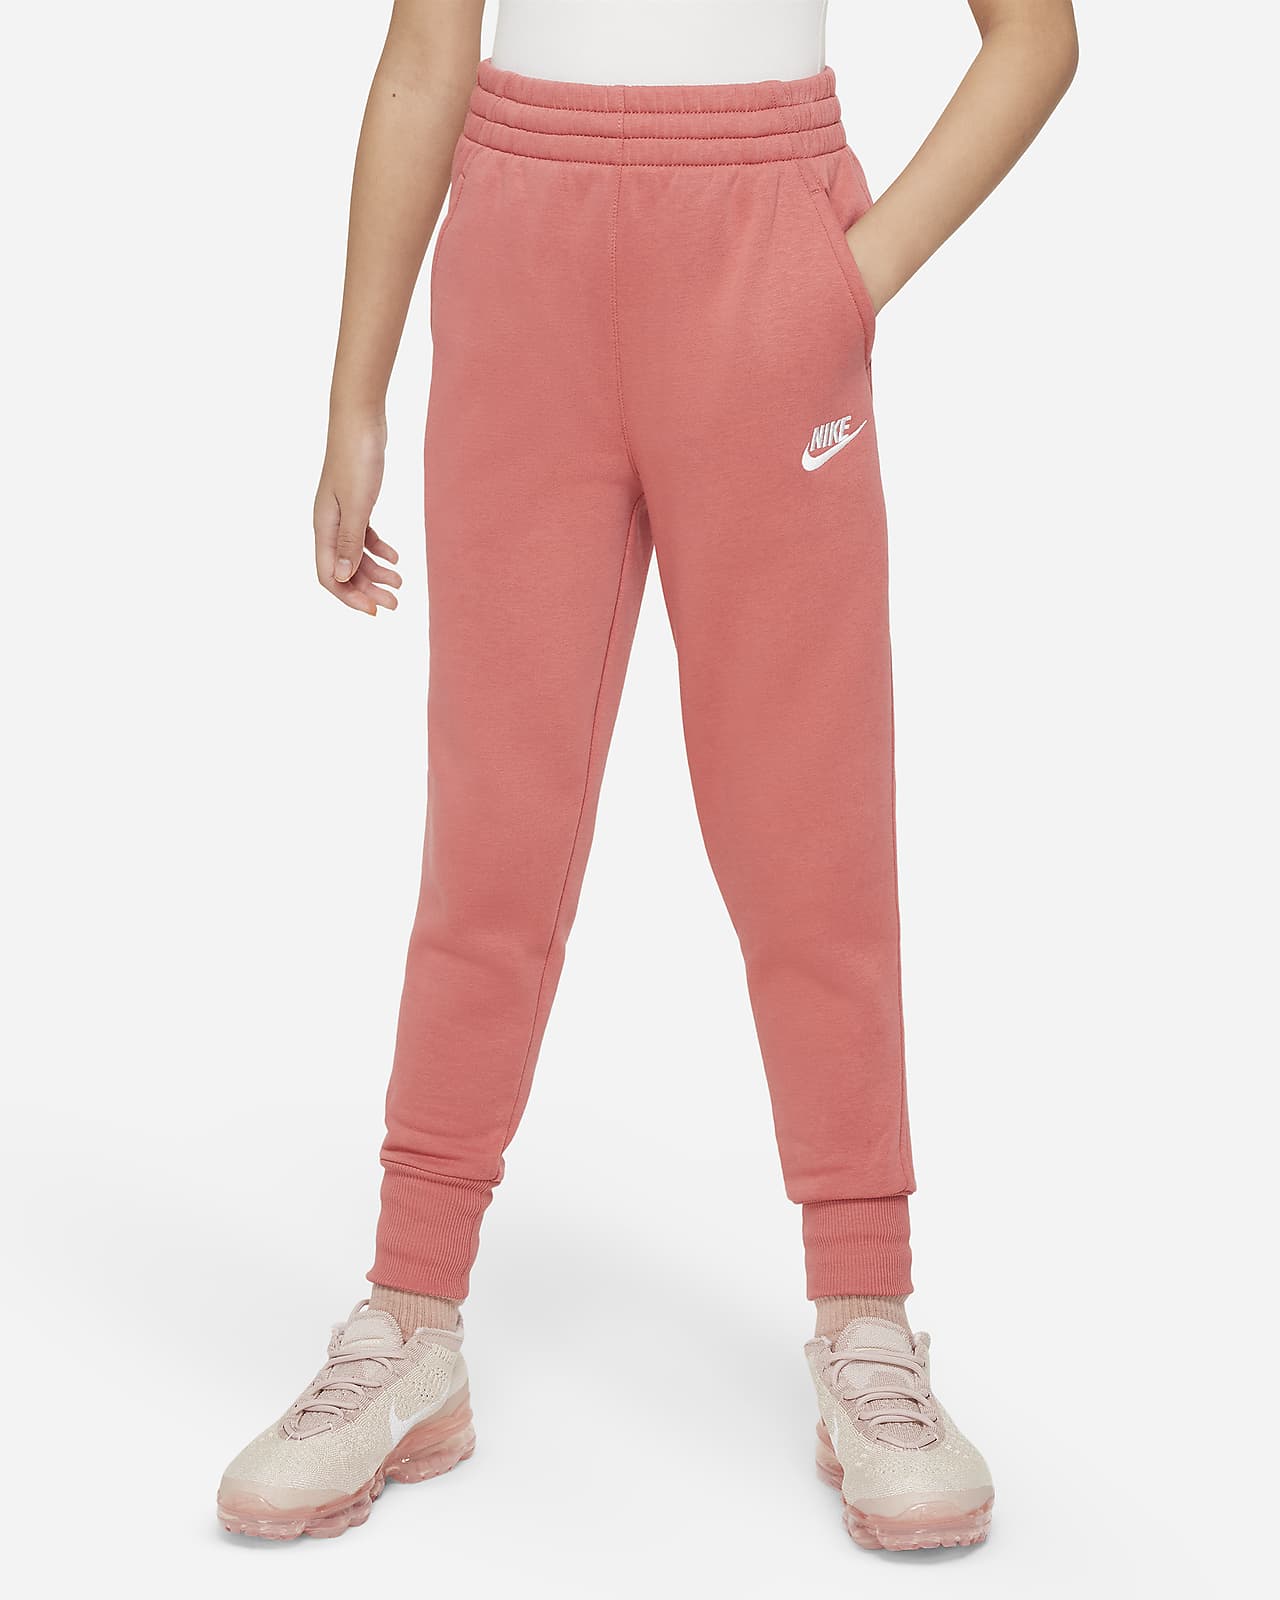 Nike Dry Therma Girls Gray & Pink Dri-fit Athletic Leggings Sweat Pants  XS(4) - Walmart.com